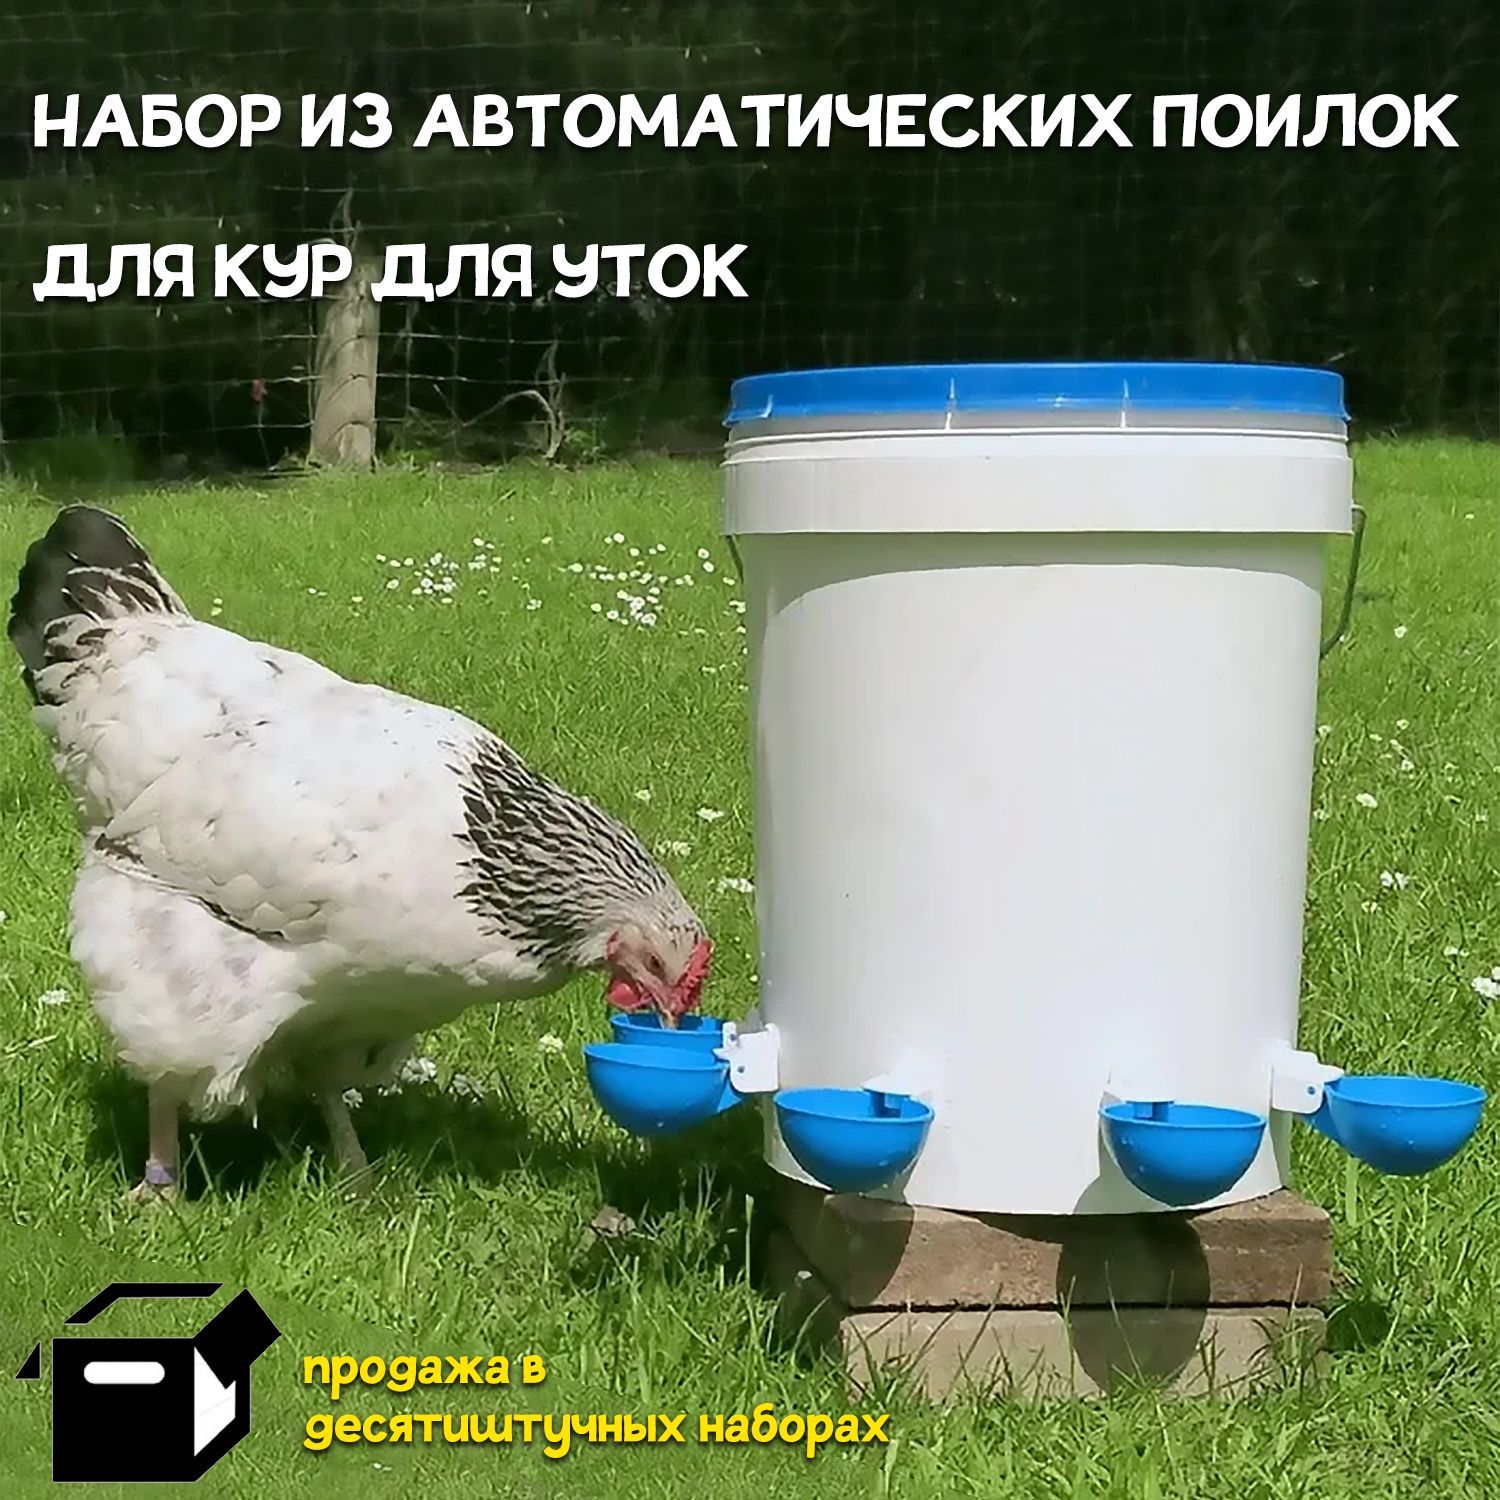 Поилки, кормушки для домашней птицы в Ташкенте